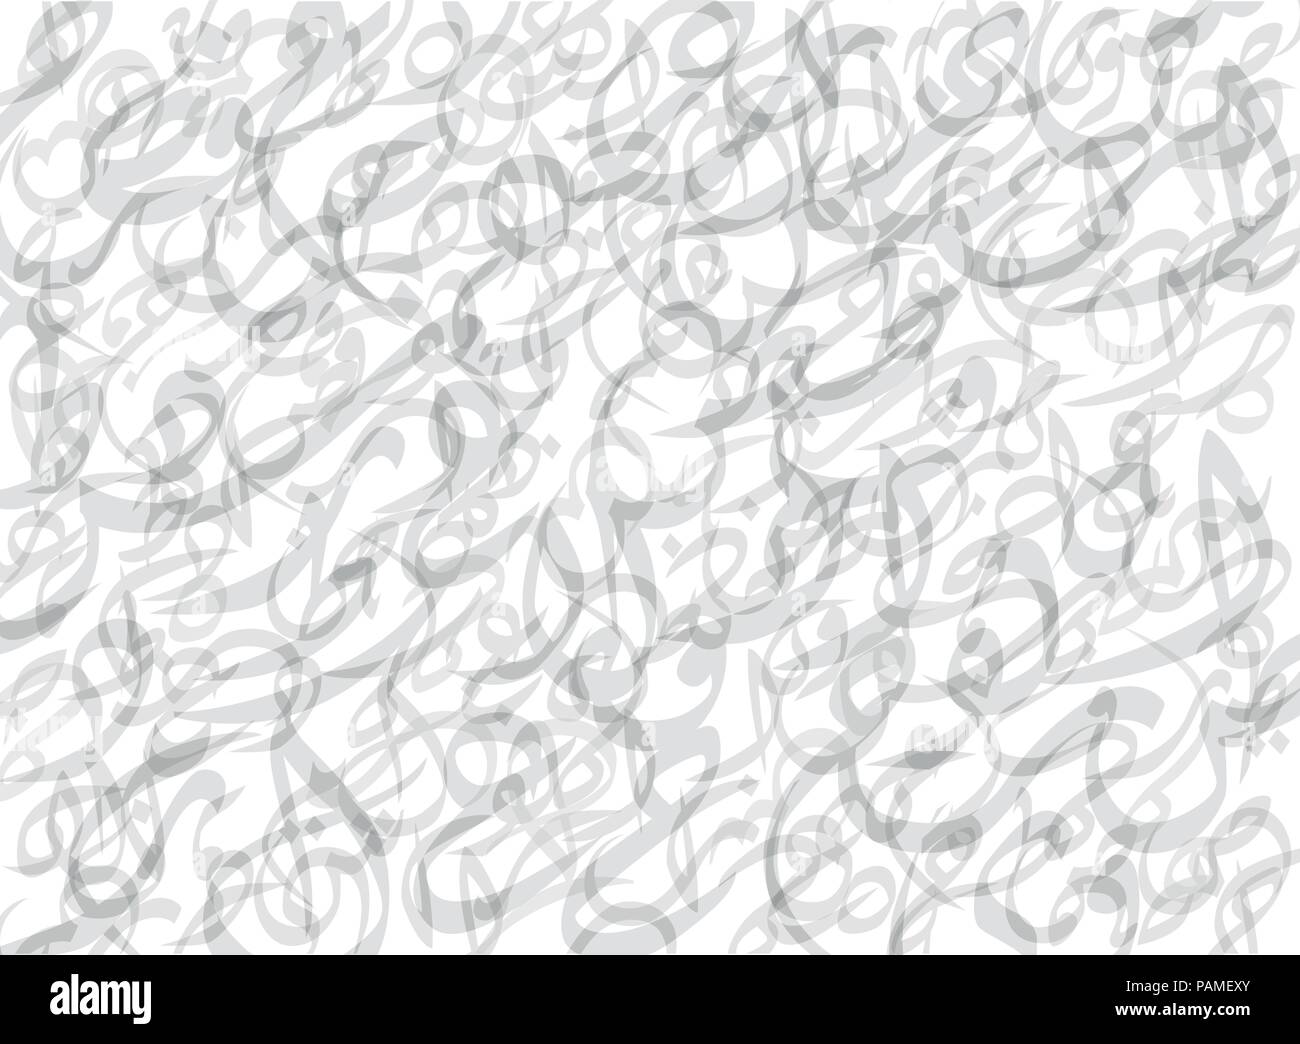 Abstract BlueBackground casuale di lettere arabe con nessun significato particolare, in bianco e nero di tono. Vettore illustrazione dello sfondo. Illustrazione Vettoriale